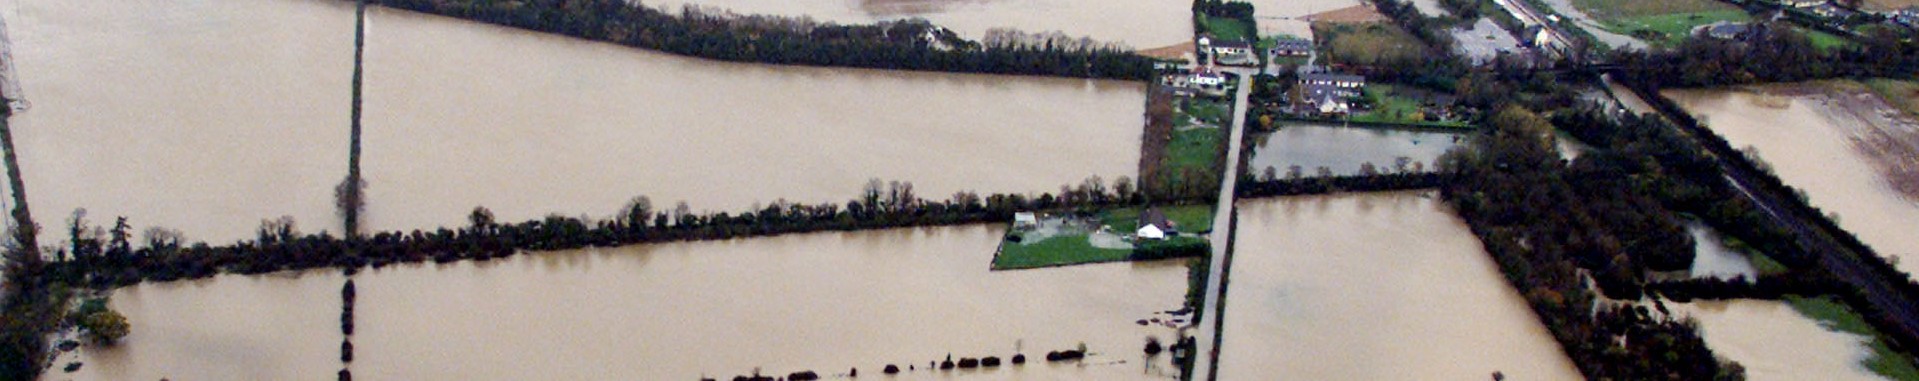 Fields in flood in the County